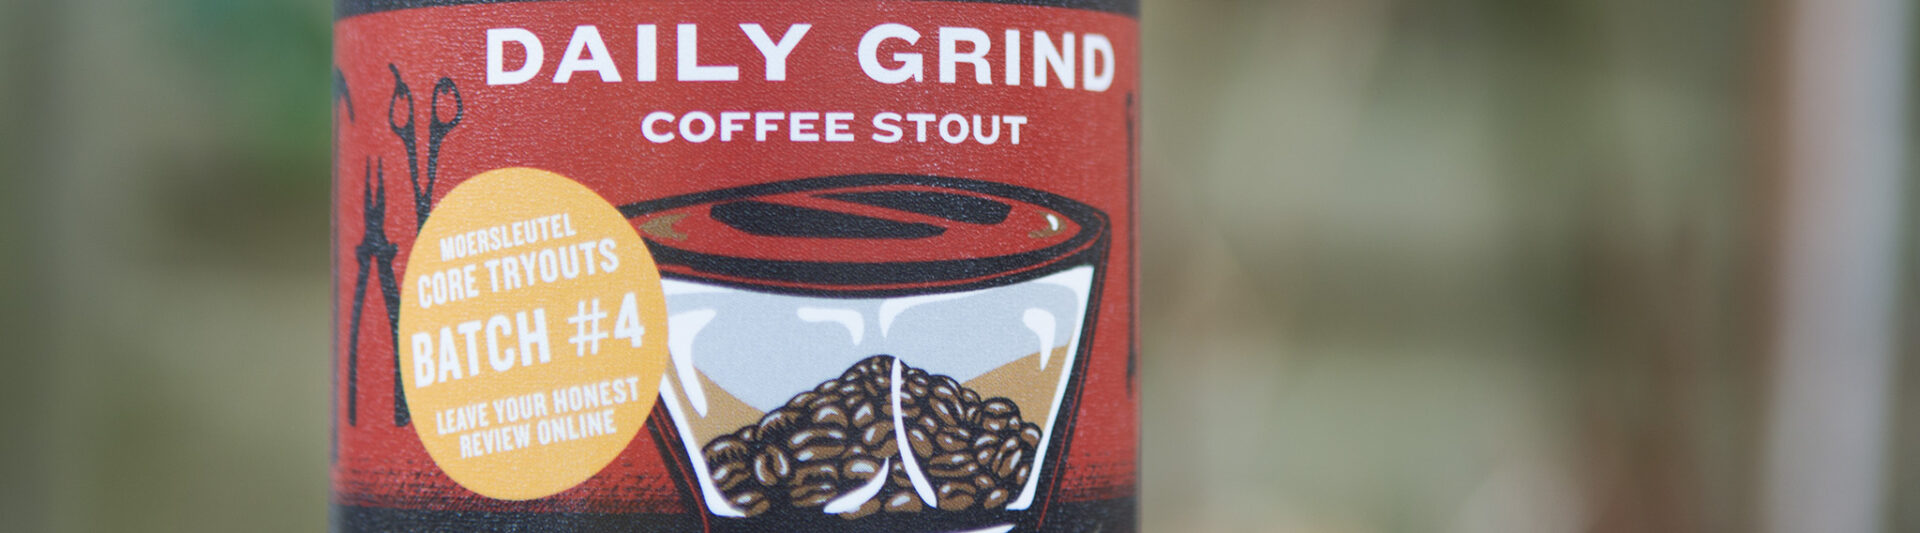 Daily Grind Coffee Stout Batch #4 - Moersleutel Beer Engineers